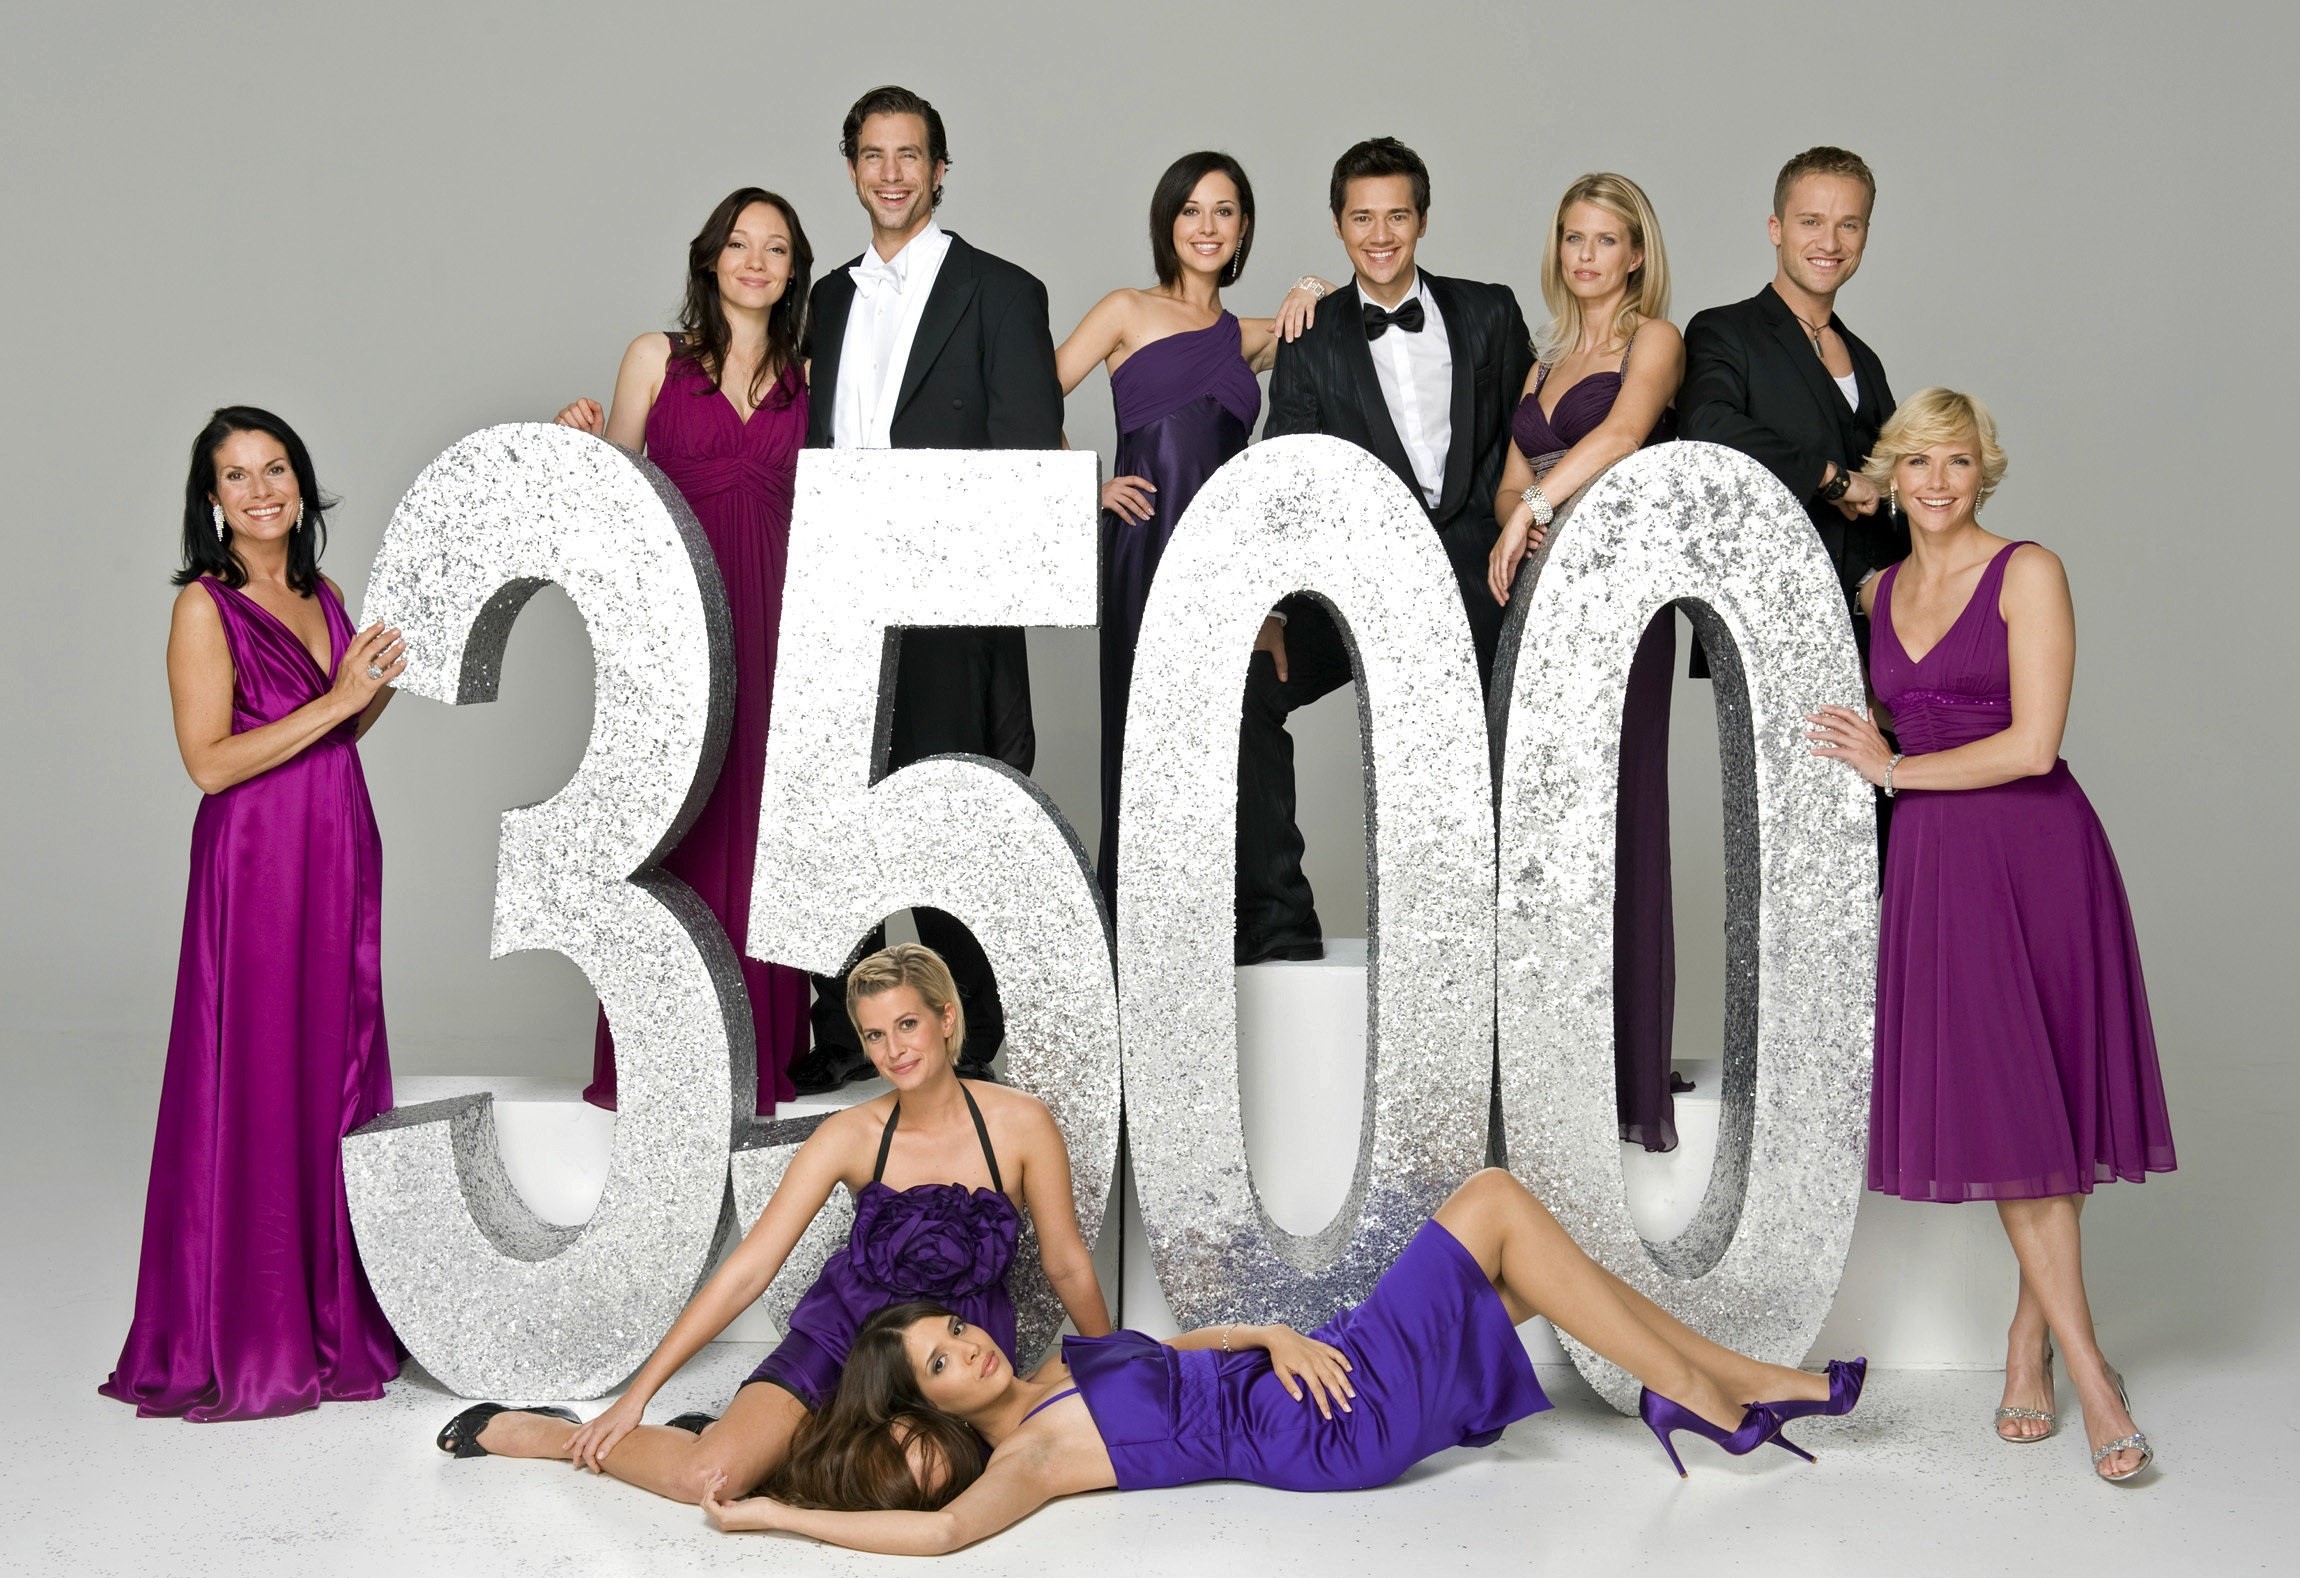 Der Hauptcast zur 3500. Folge. Insgesamt wurden 4664 Folgen "Verbotene Liebe" produziert und ausgestrahlt.